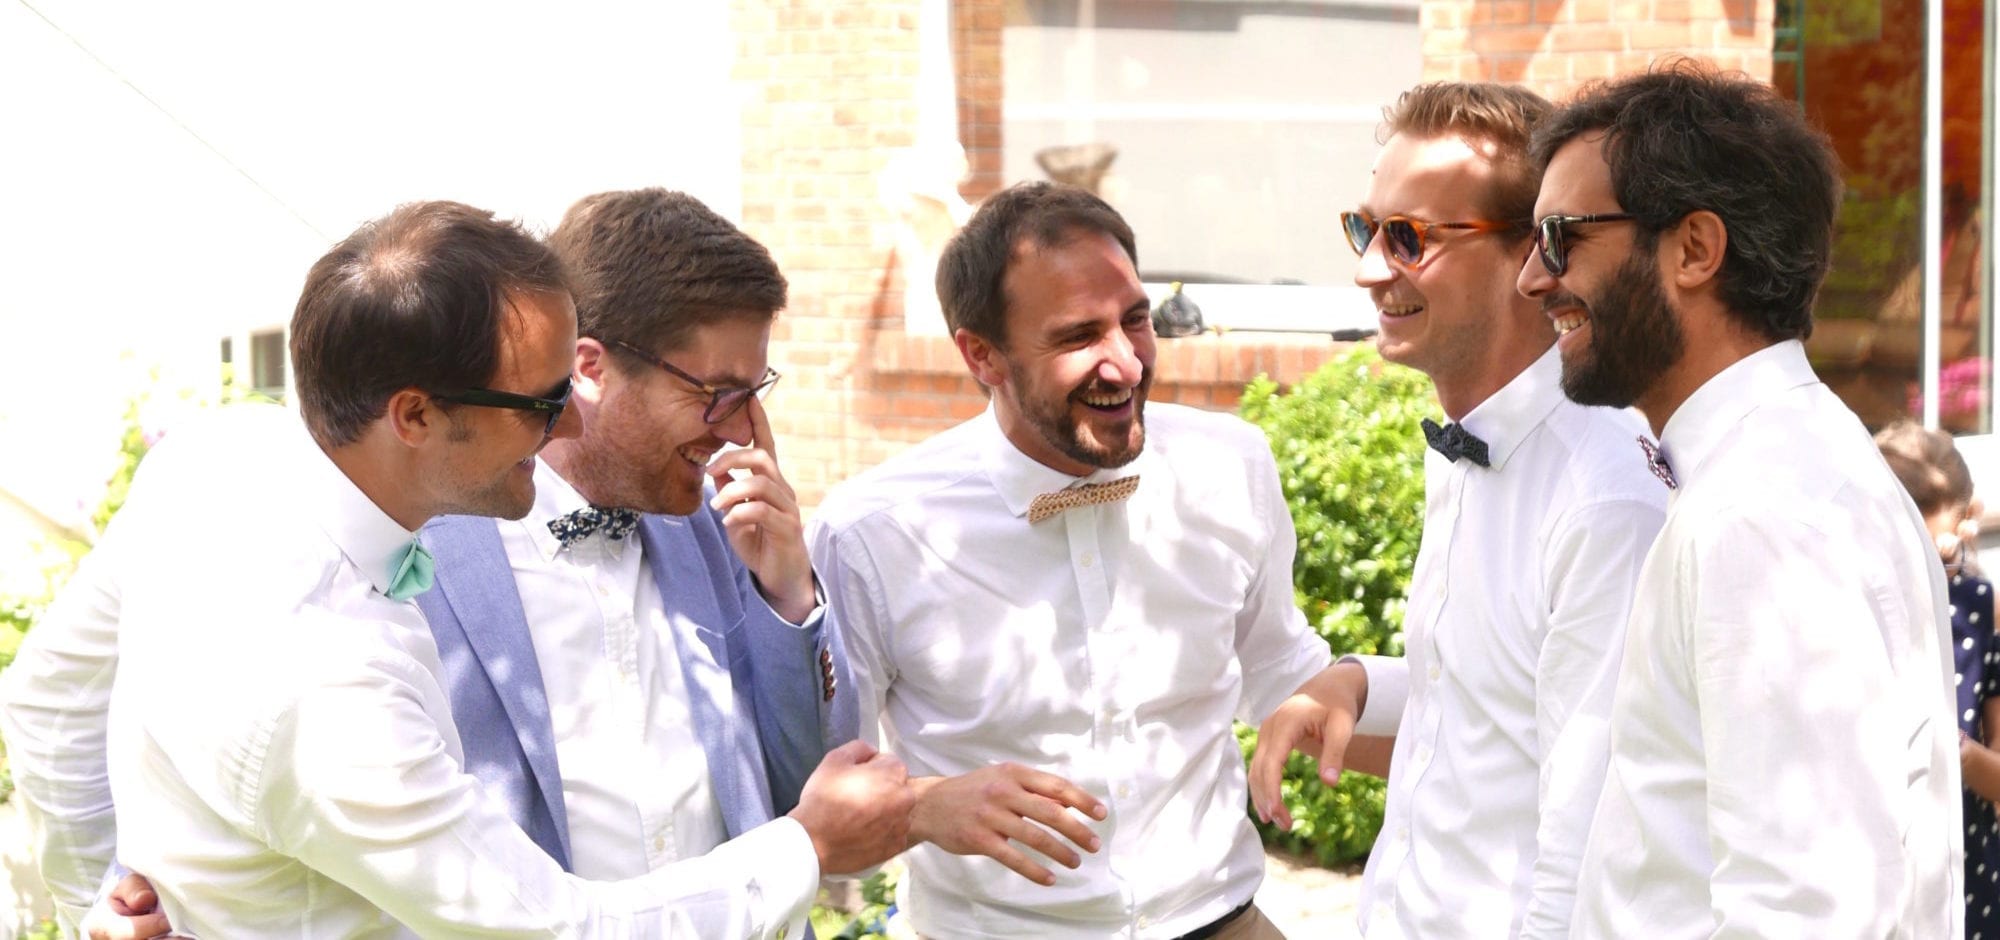 5 amis en noeud papillon en été pour mariages